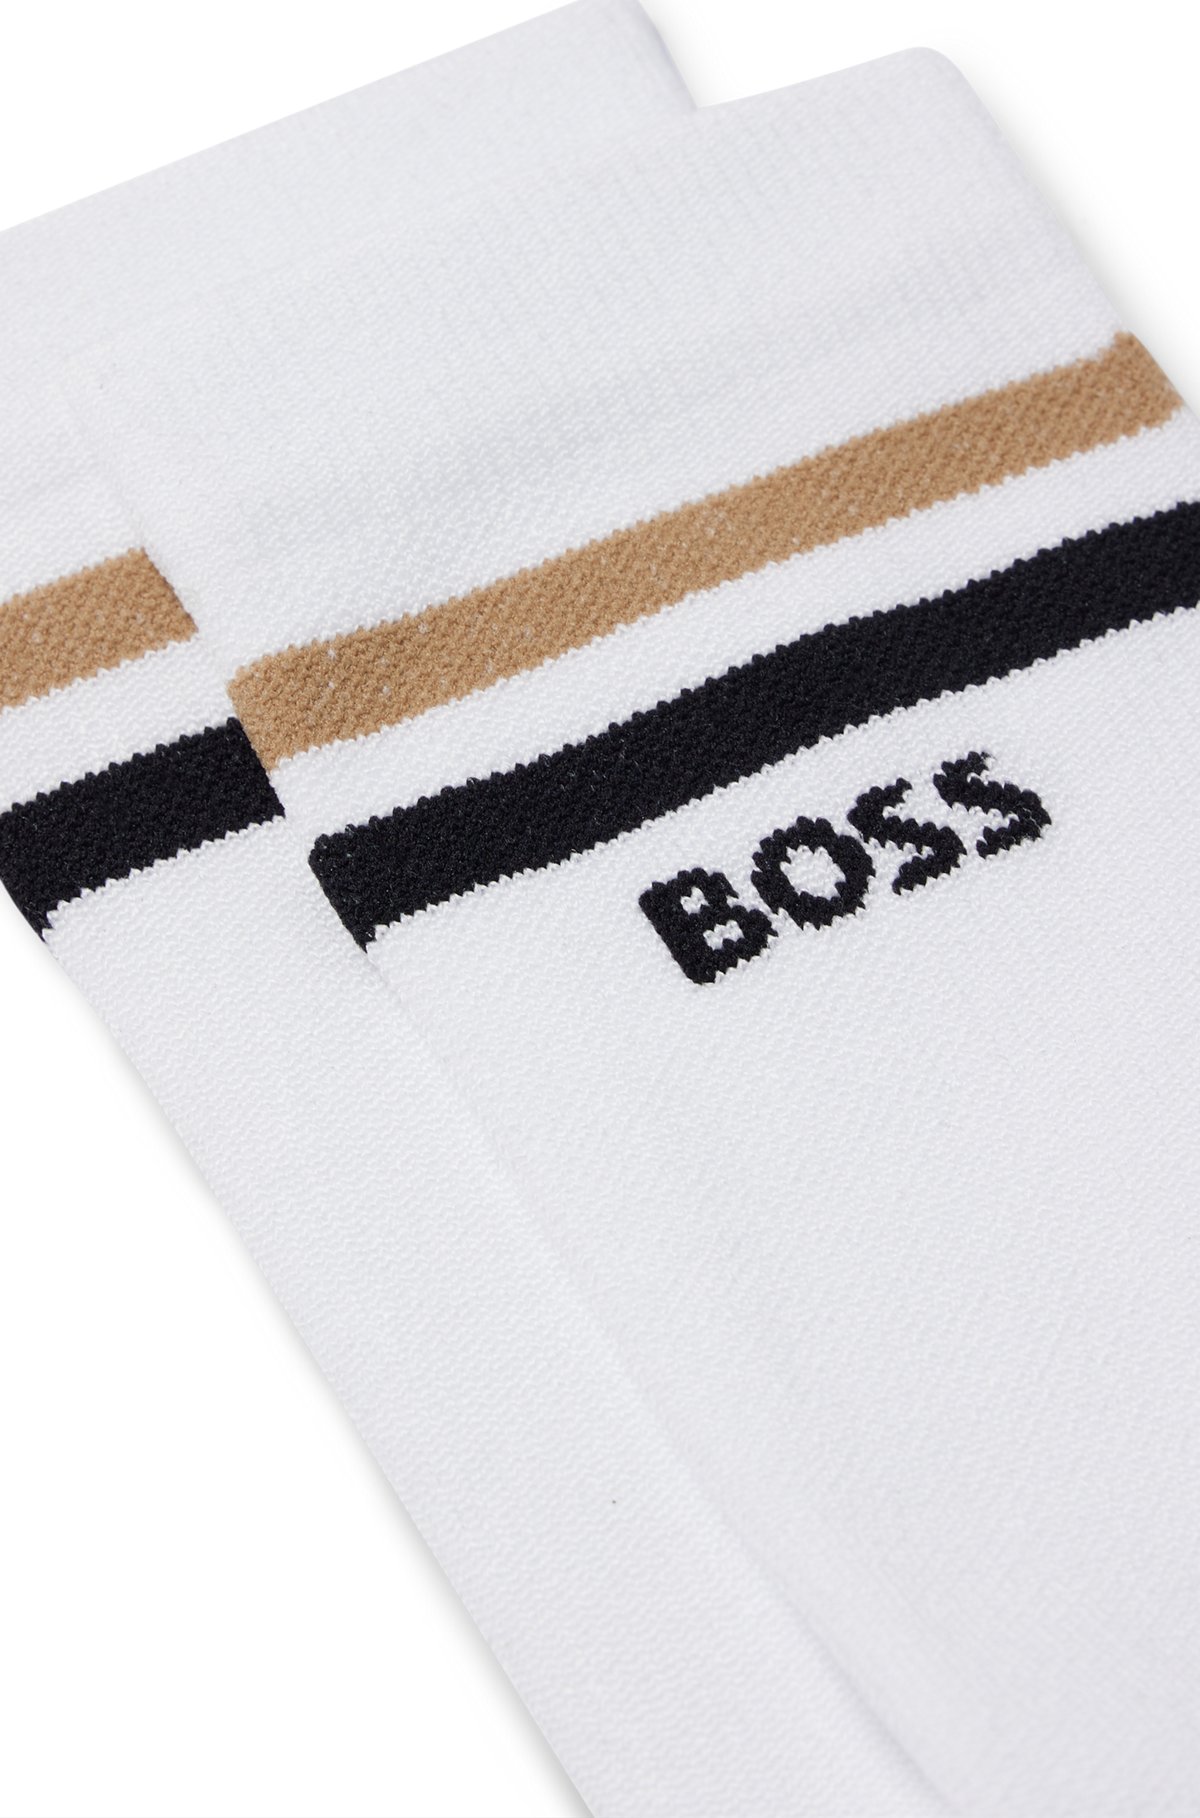 Sneldrogende sokken van BOSS x ASSOS met naadloze constructie, Wit